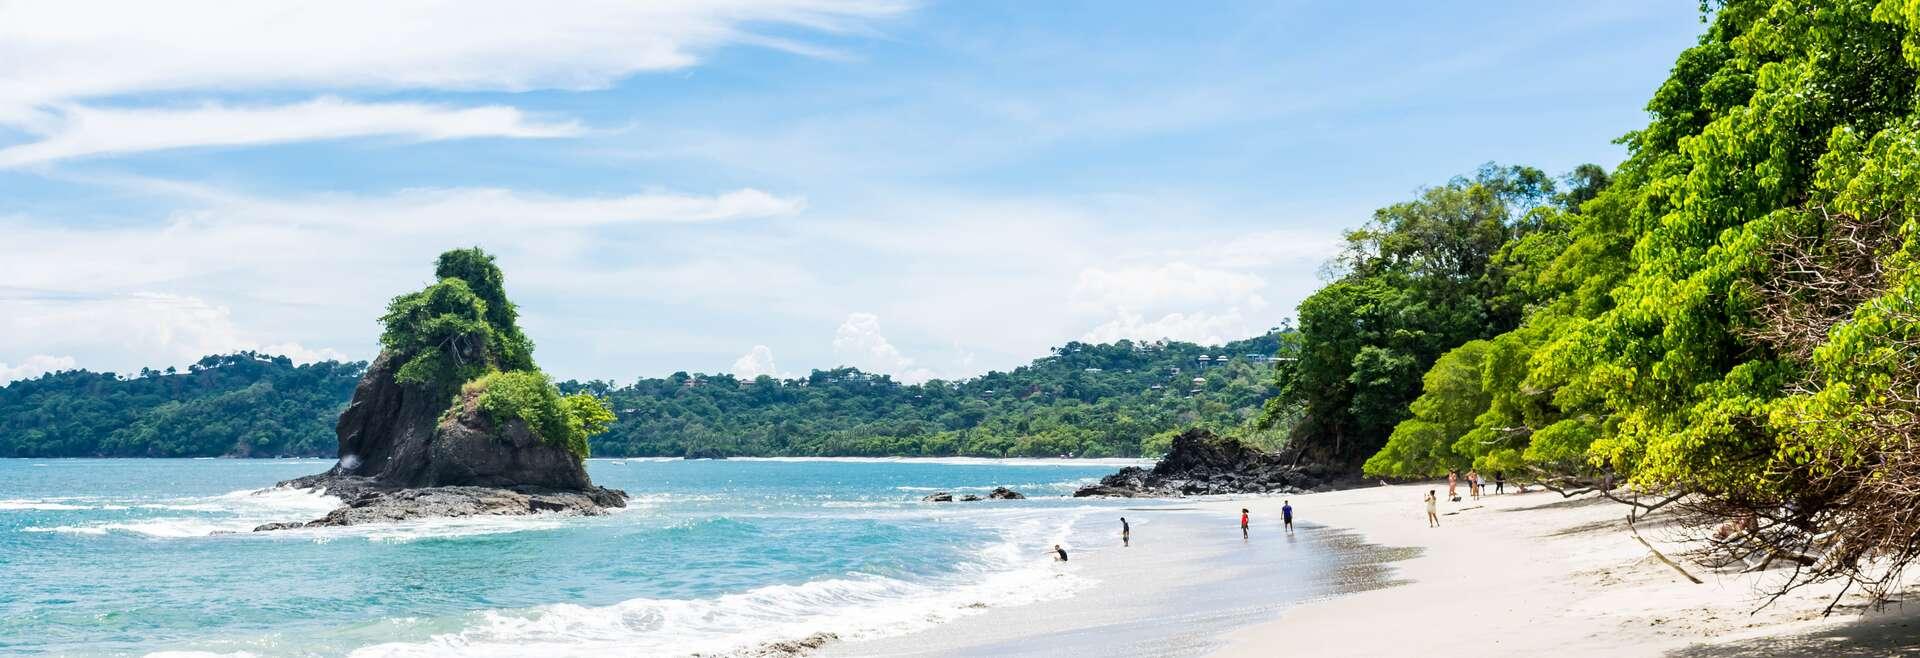 Séjour linguistique Costa Rica, Manuel Antonio, plage